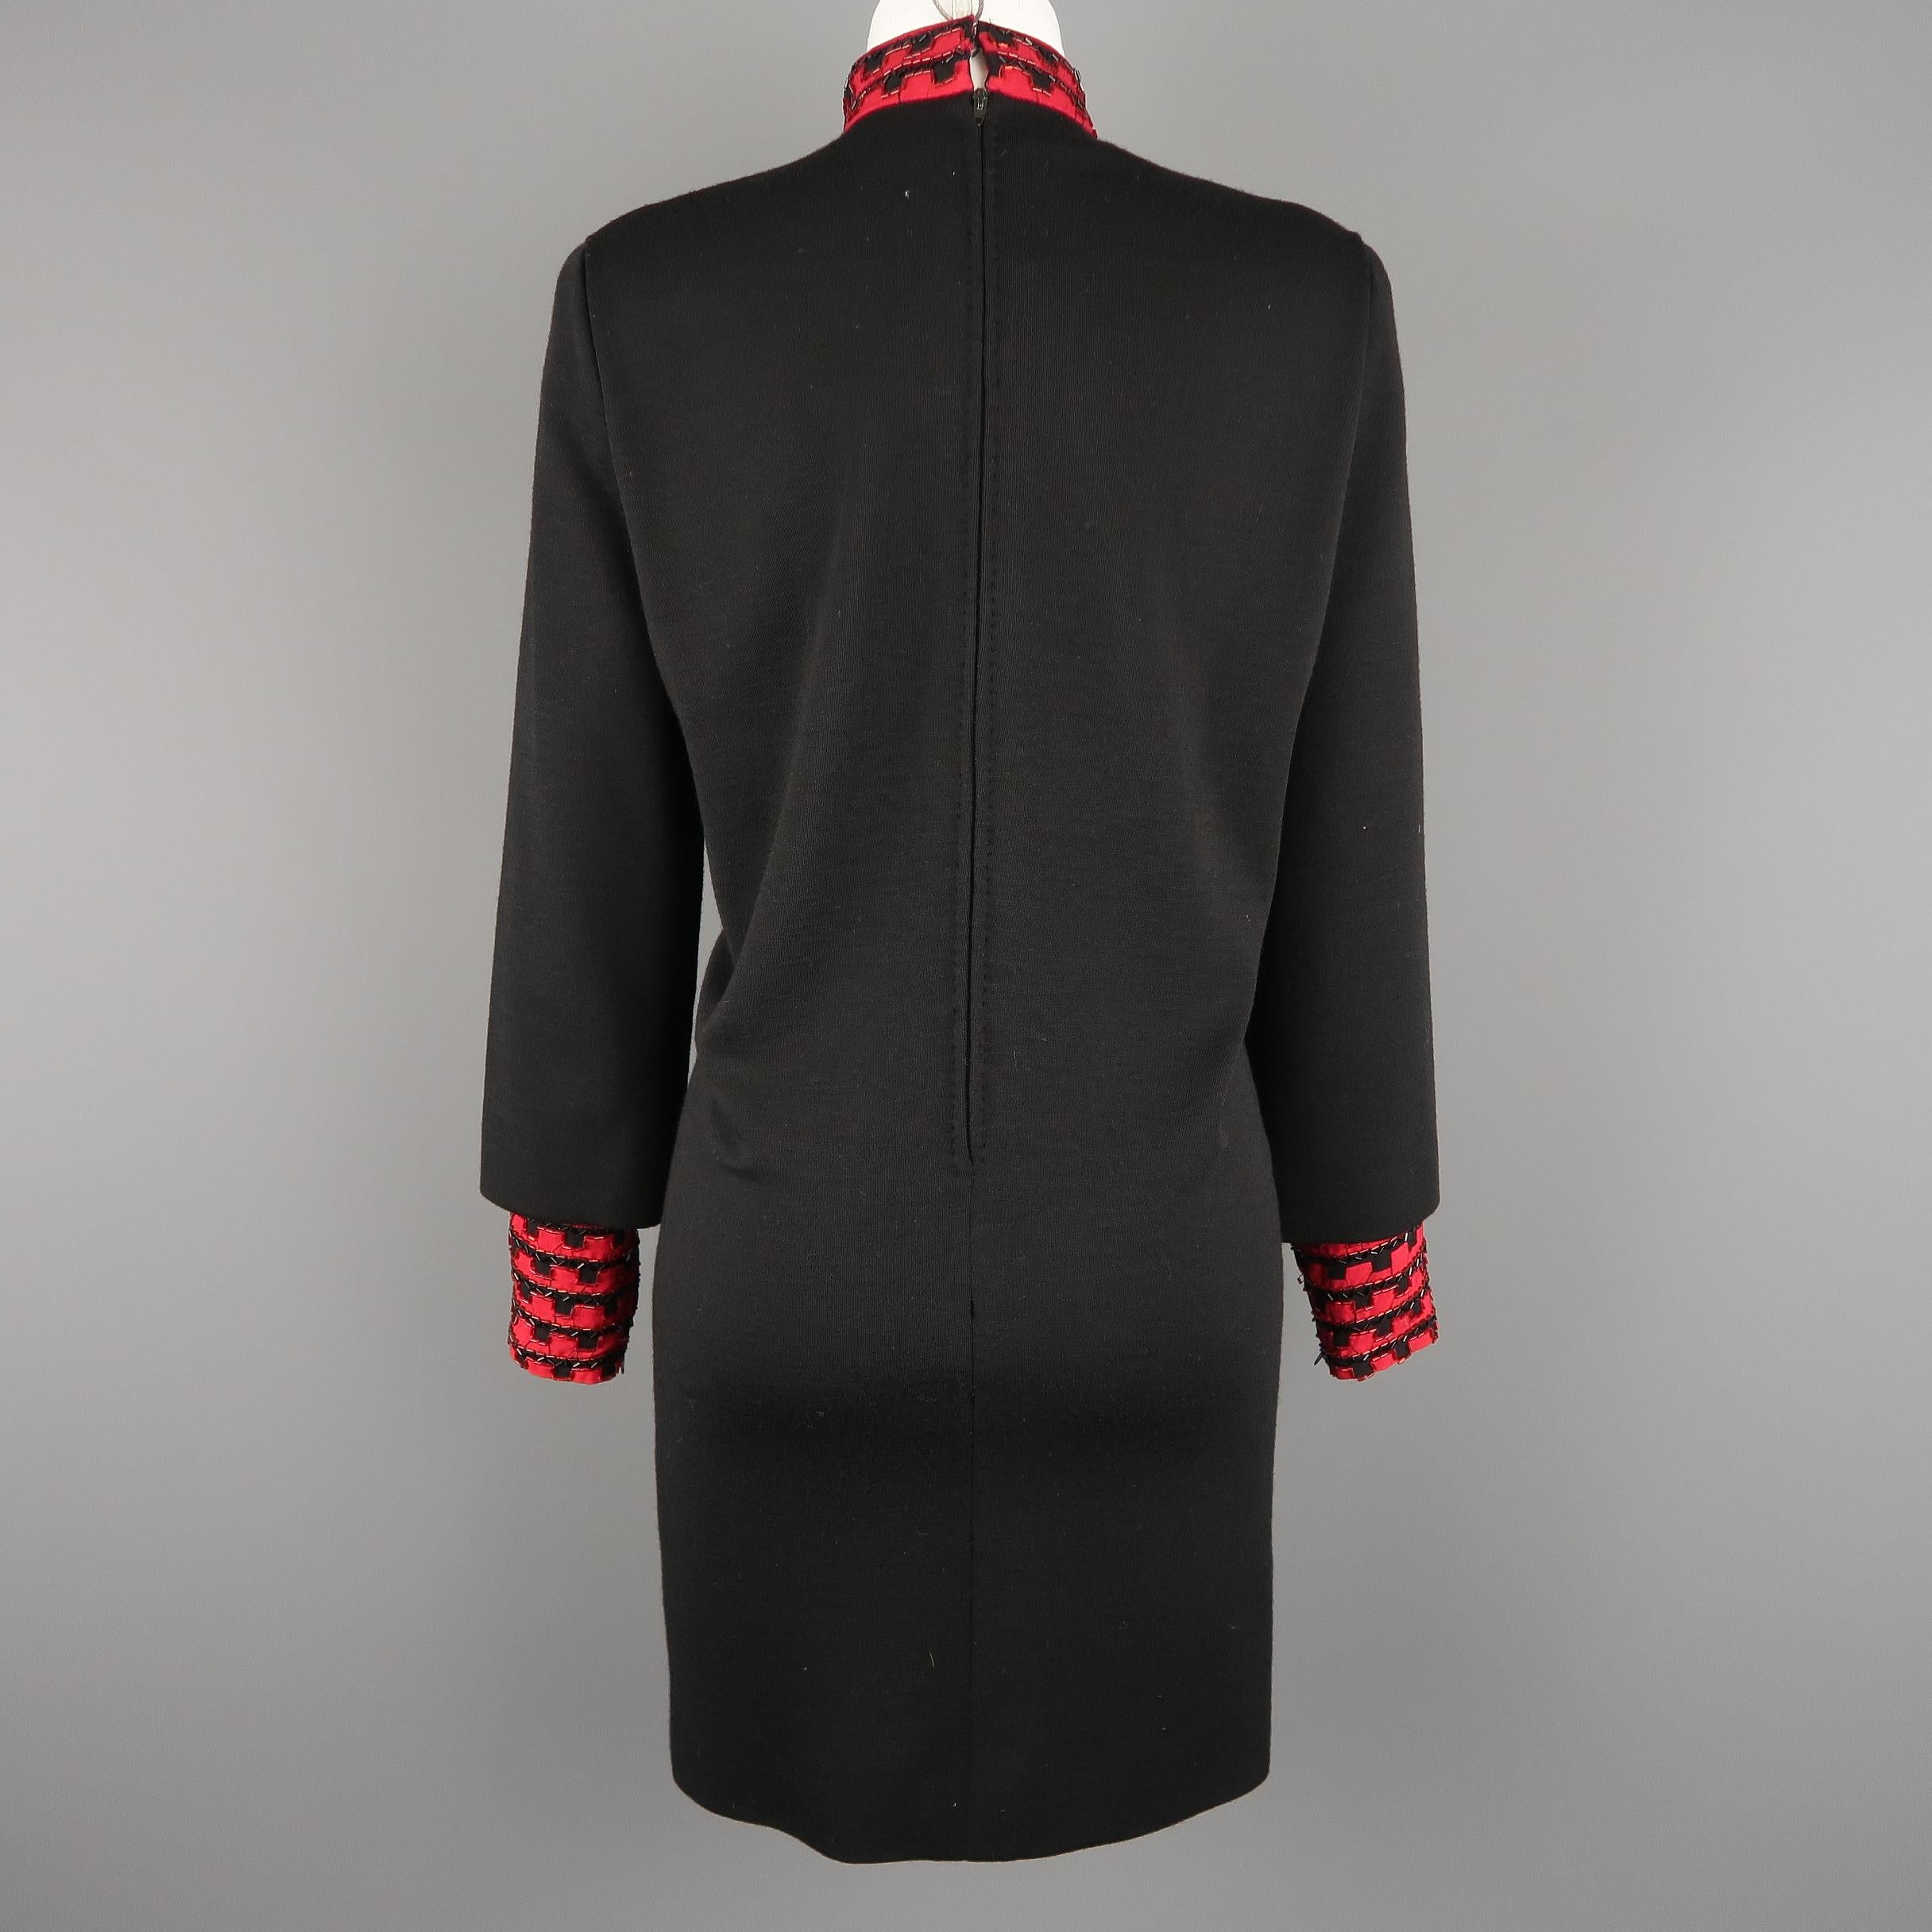 Vintage 1980's BOB MACKIE Size L Black Jersey Red Beaded Neck Dress 2